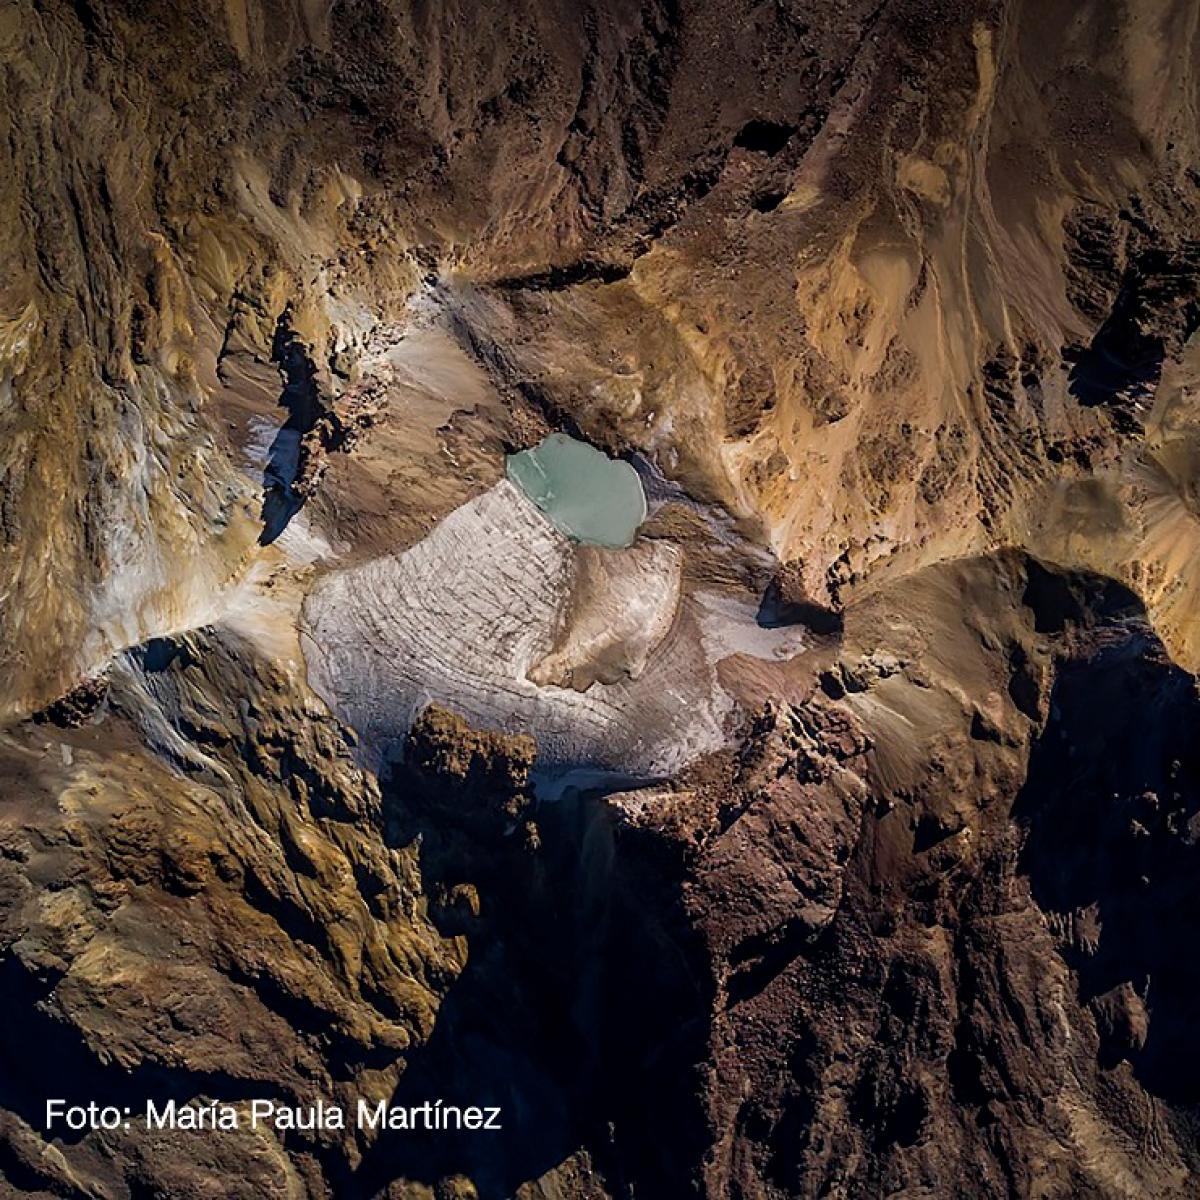 Fotografía de María Paula Martínez realizada con dron sobre el glaciar de la panza del volcán Iztaccíhuatl el 10 de noviembre de 2020.